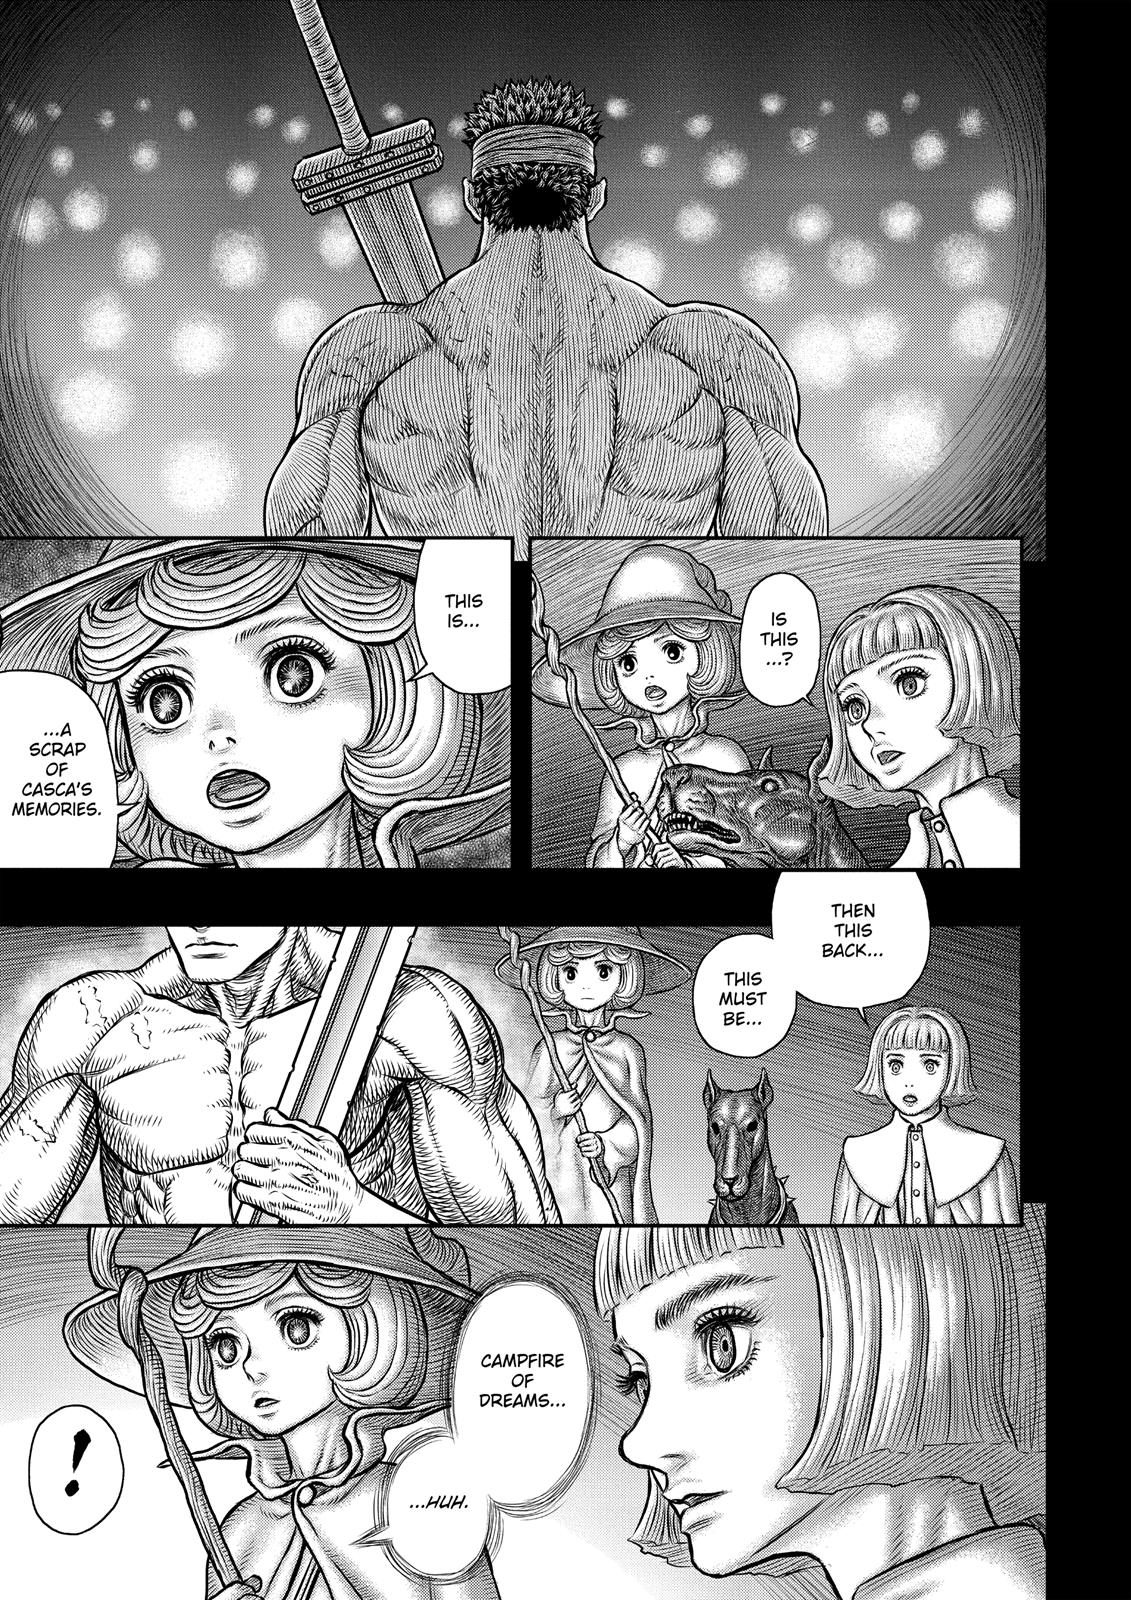 Berserk Manga Chapter 349 image 11